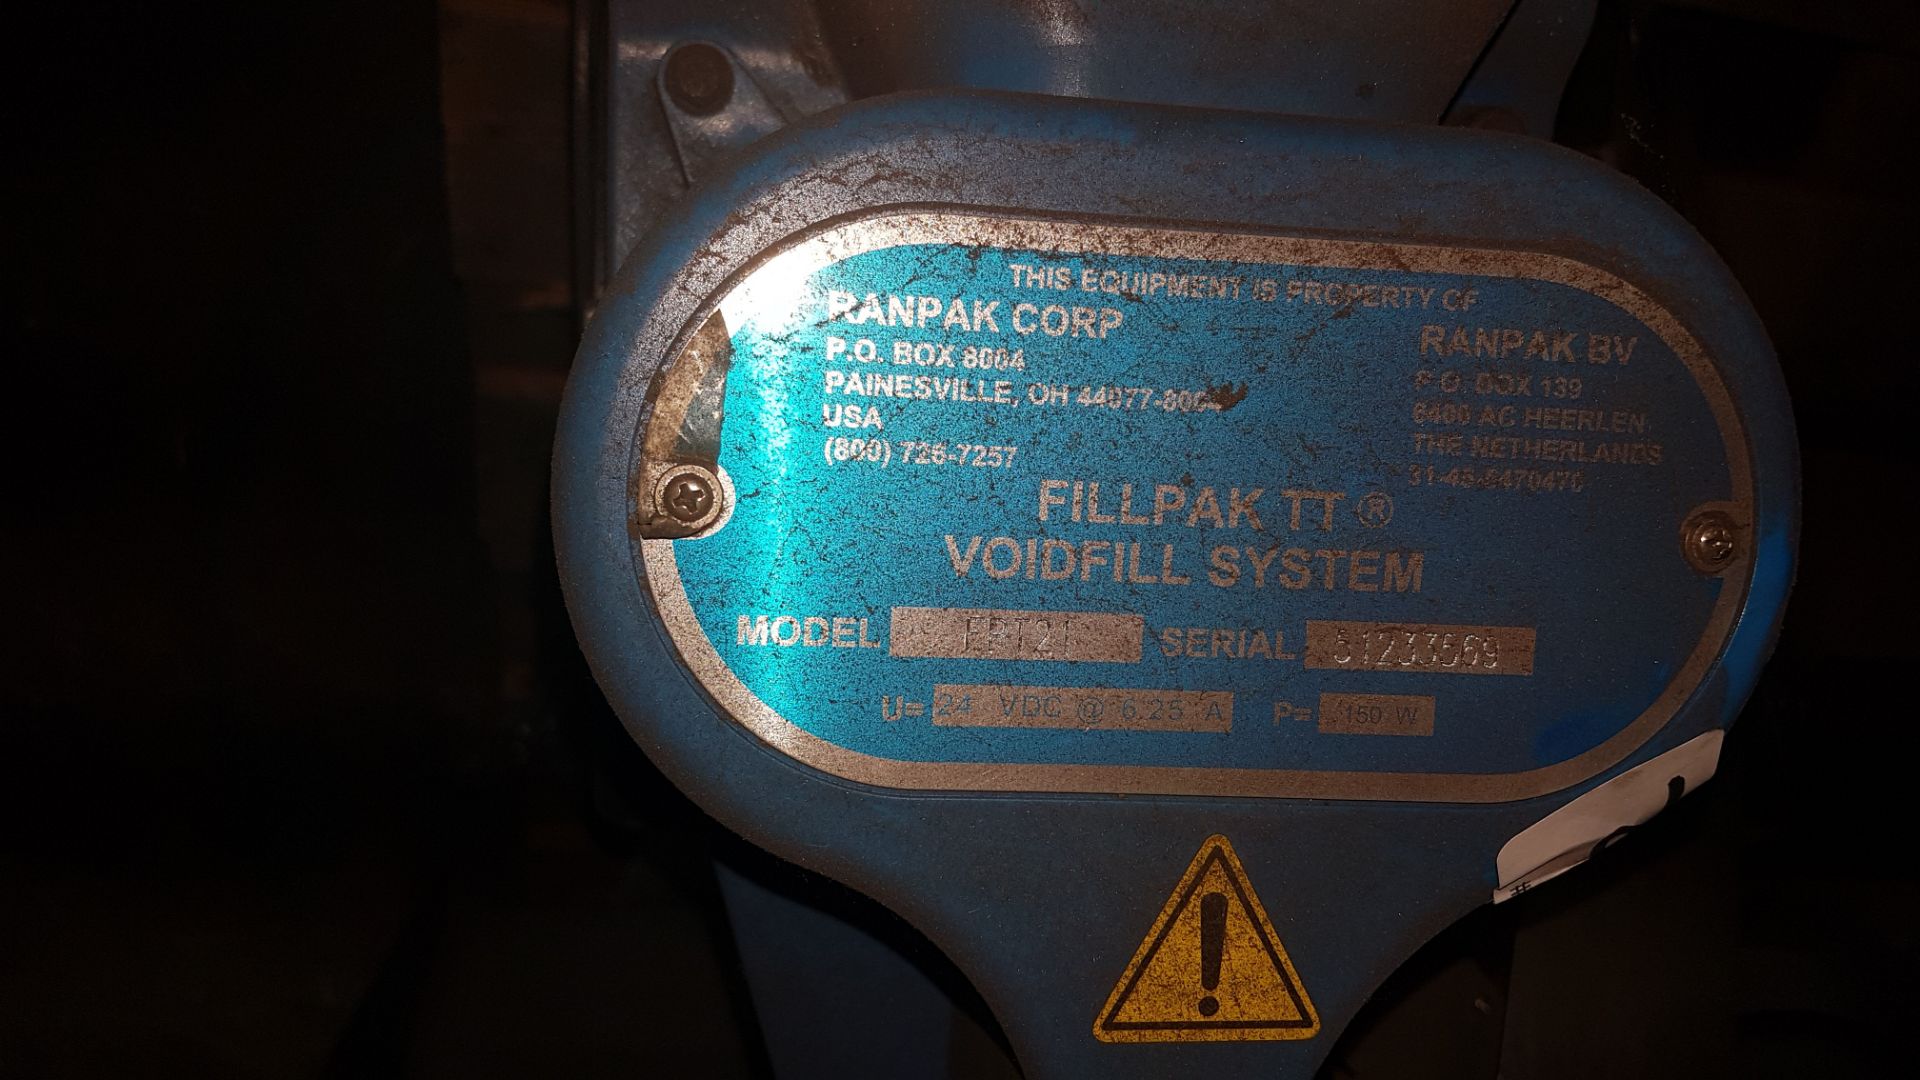 fillpak TT VoidFill System, Model FPT21, Serial number 51233569. - Image 4 of 9